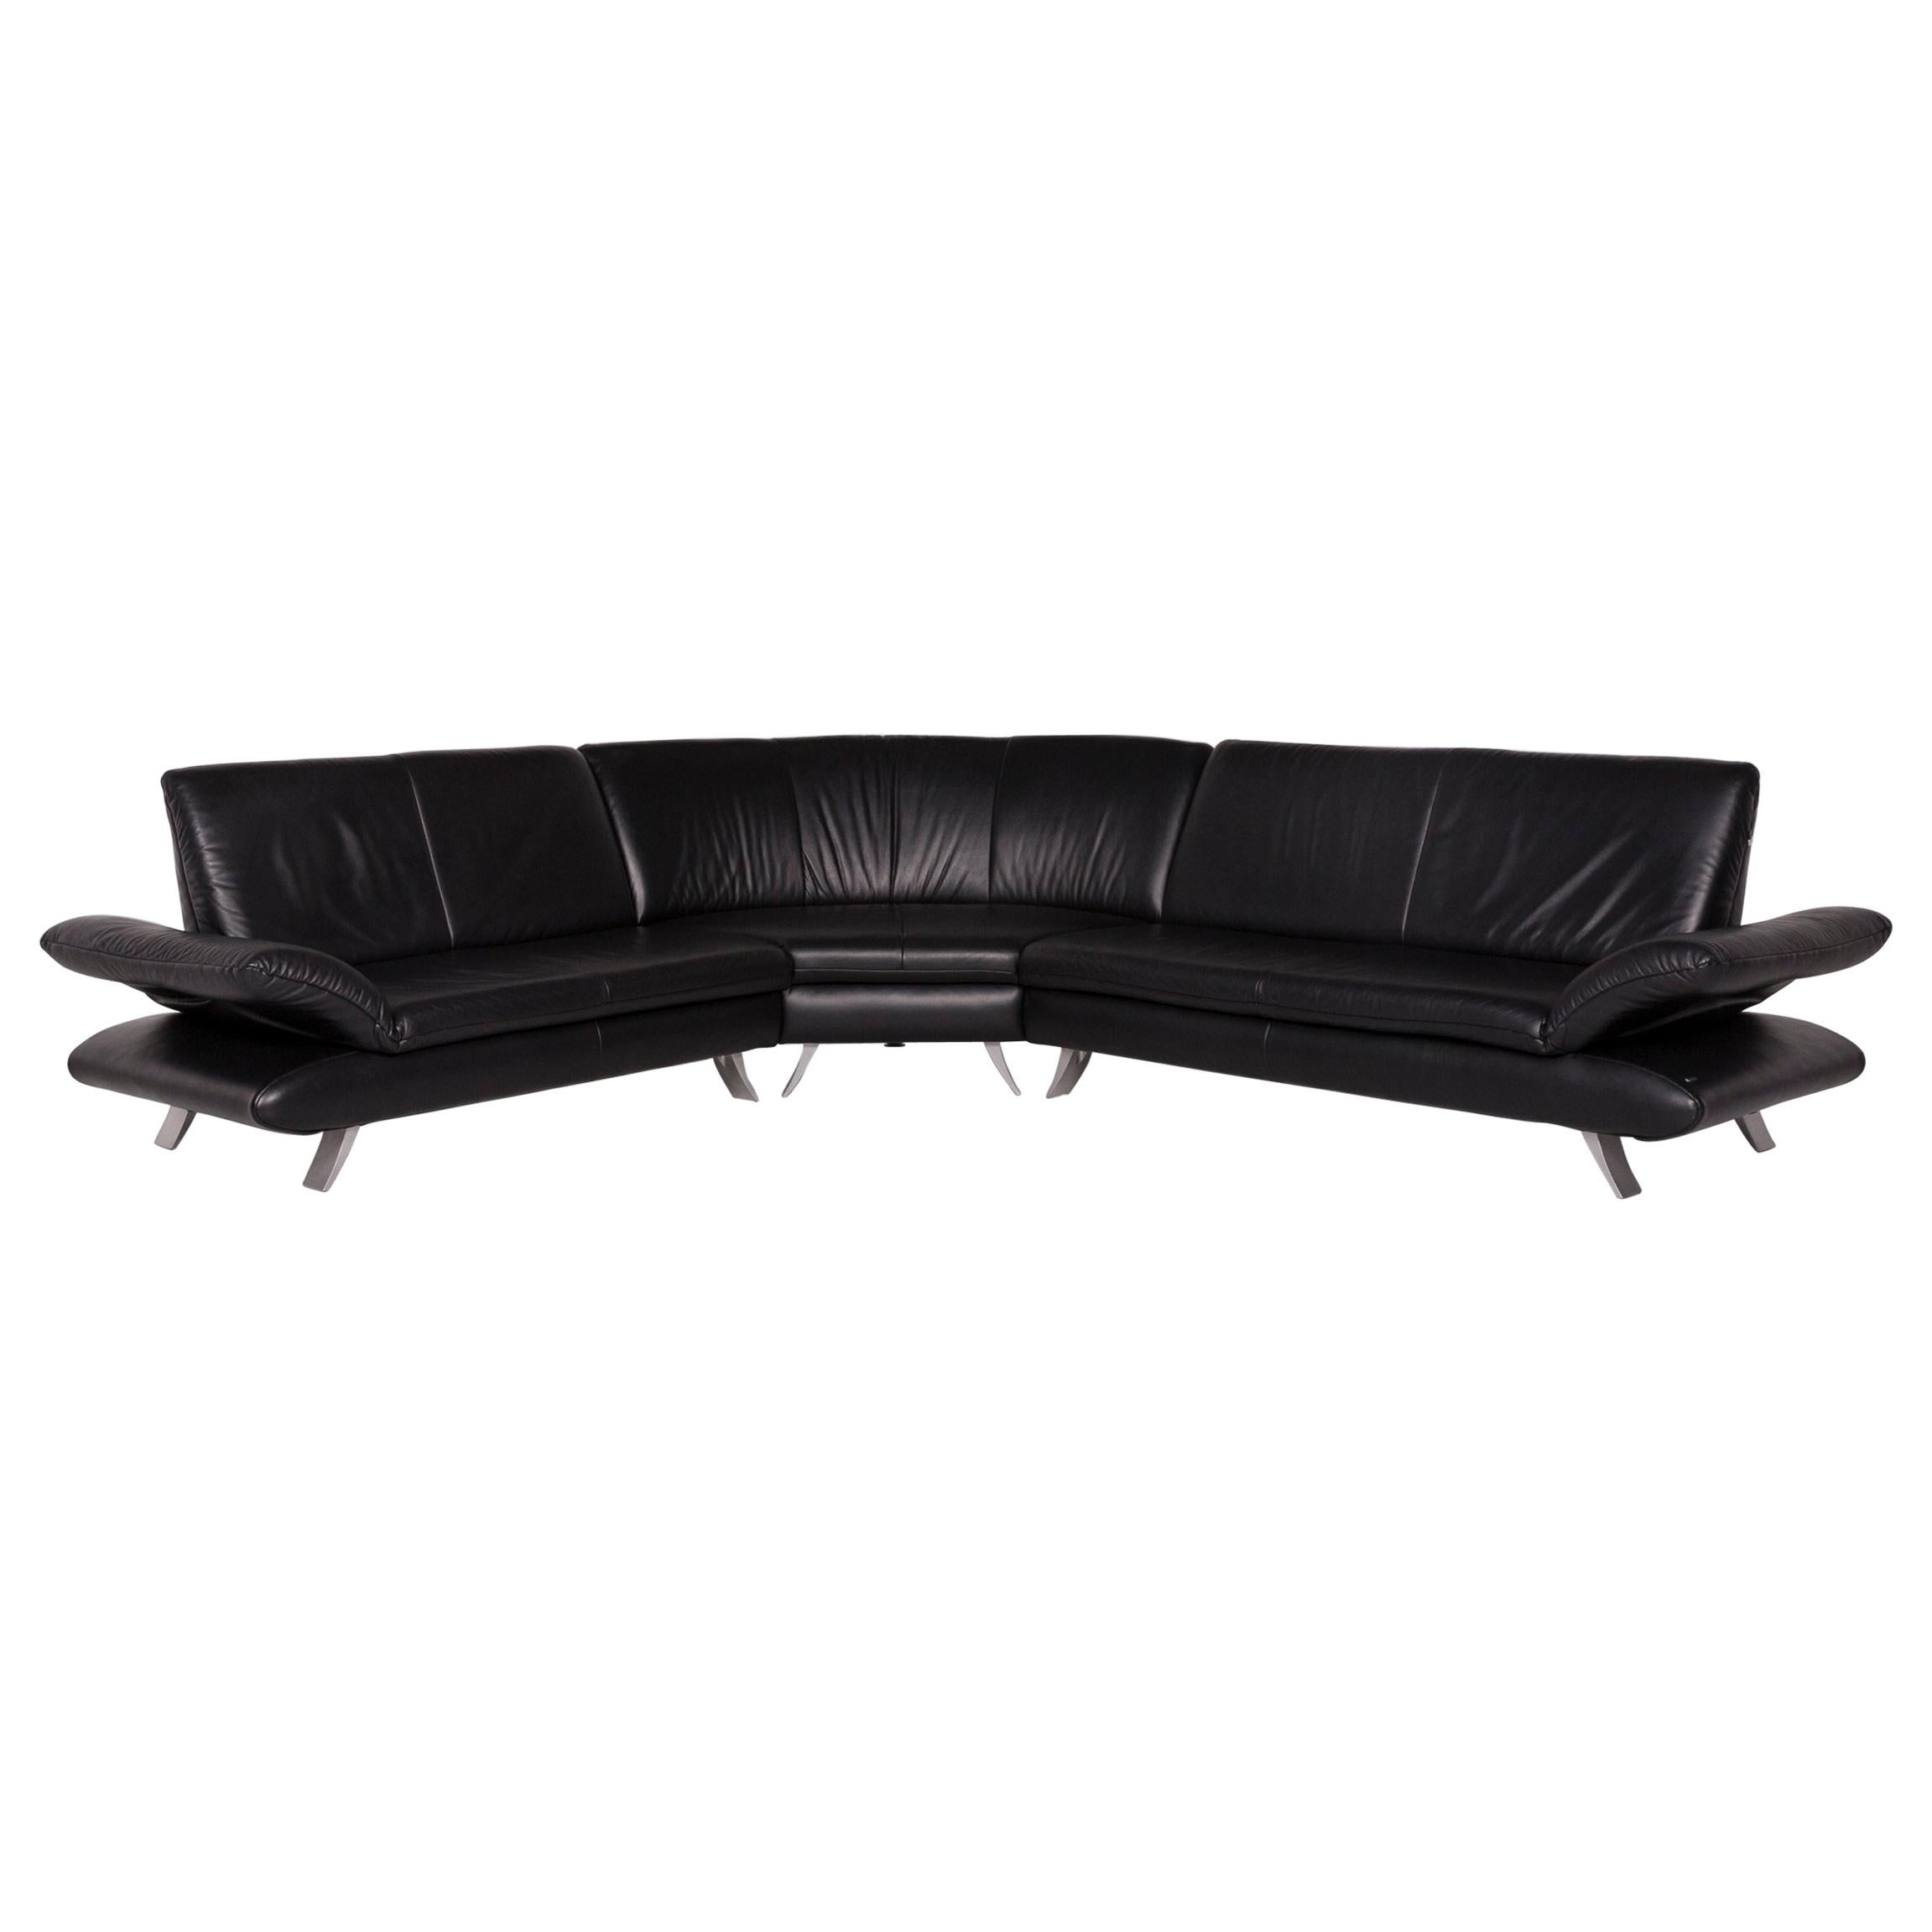 Koinor Rossini Leather Corner Sofa Black Sofa Couch